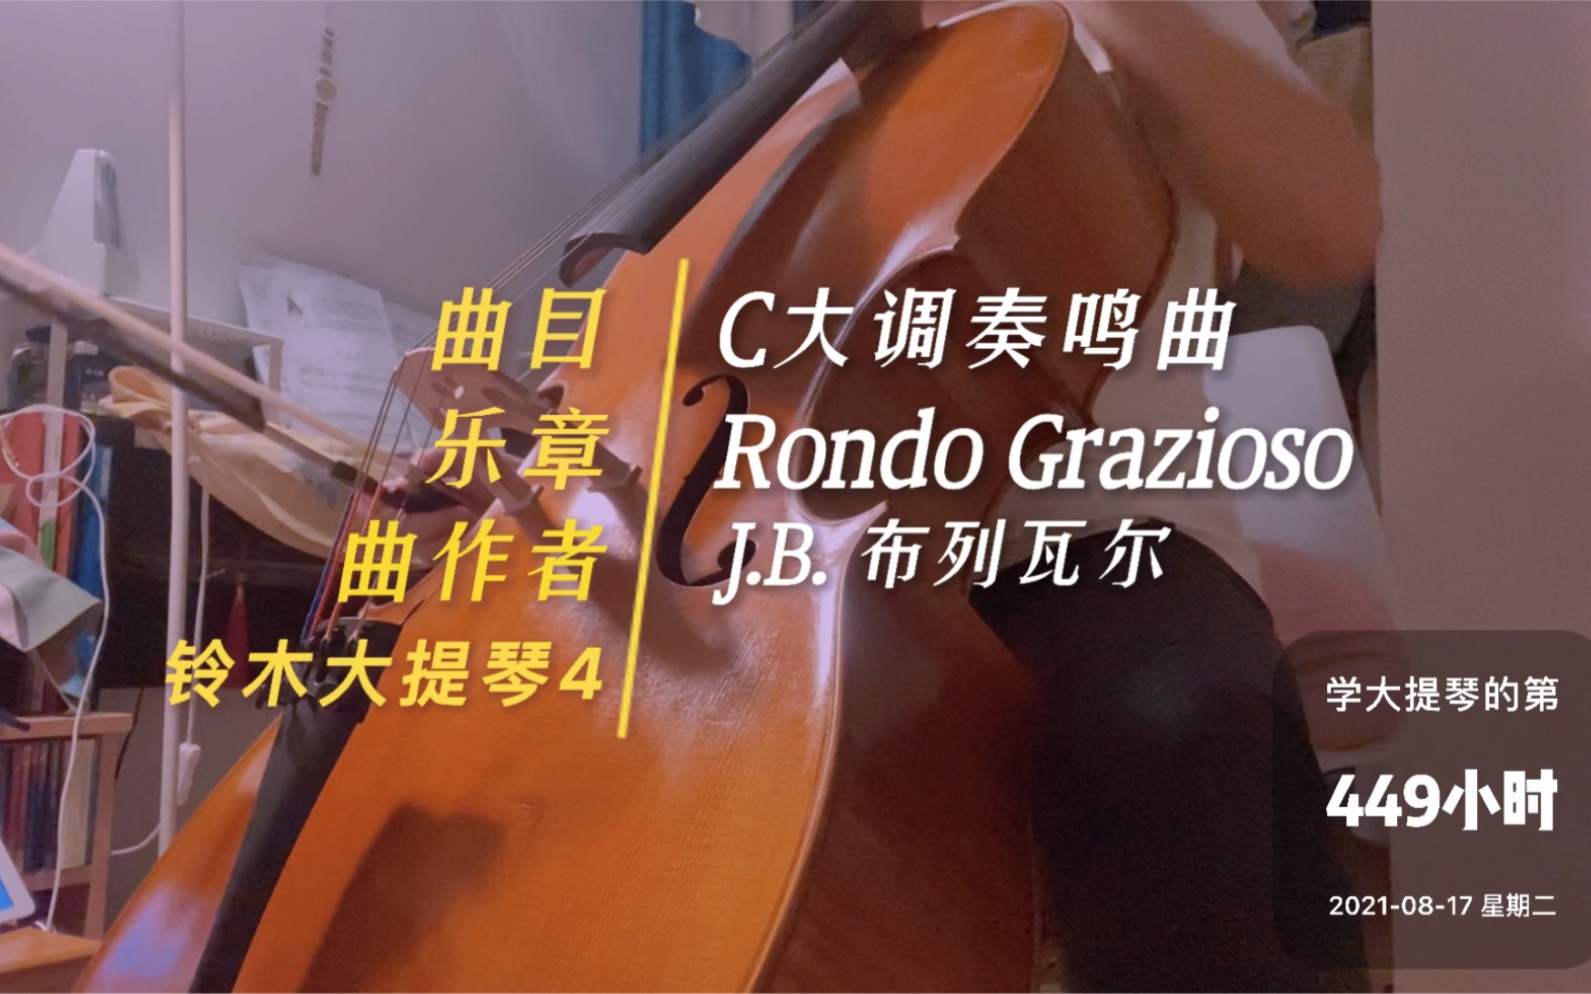 [图]练琴打卡 ｜ 铃木大提琴第四册 - 布列瓦尔 - C大调奏鸣曲 Rondo Grazioso - 2021.8.17